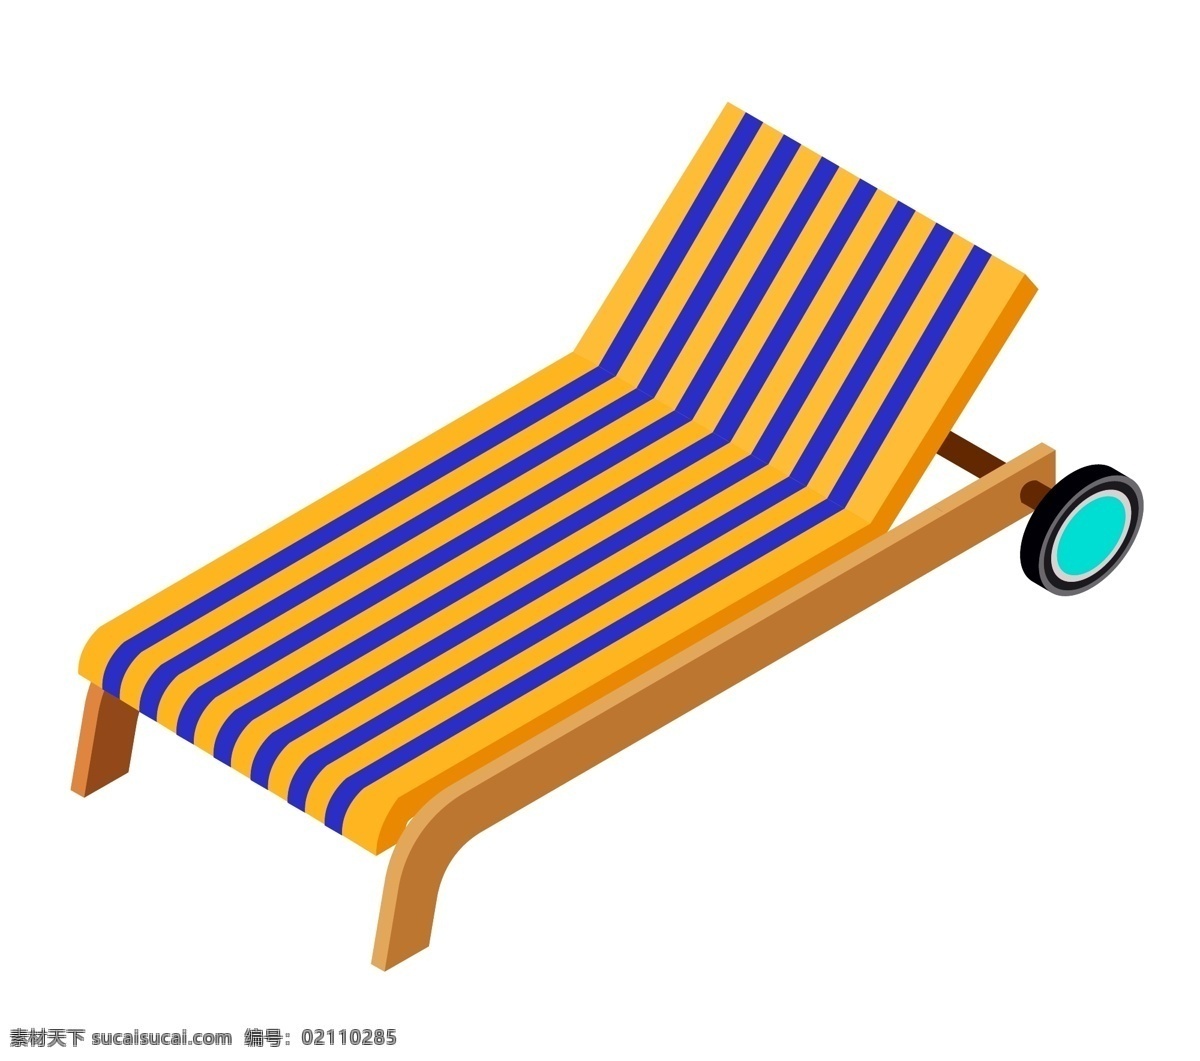 海滩休闲躺椅 沙滩海滩 躺椅 休闲